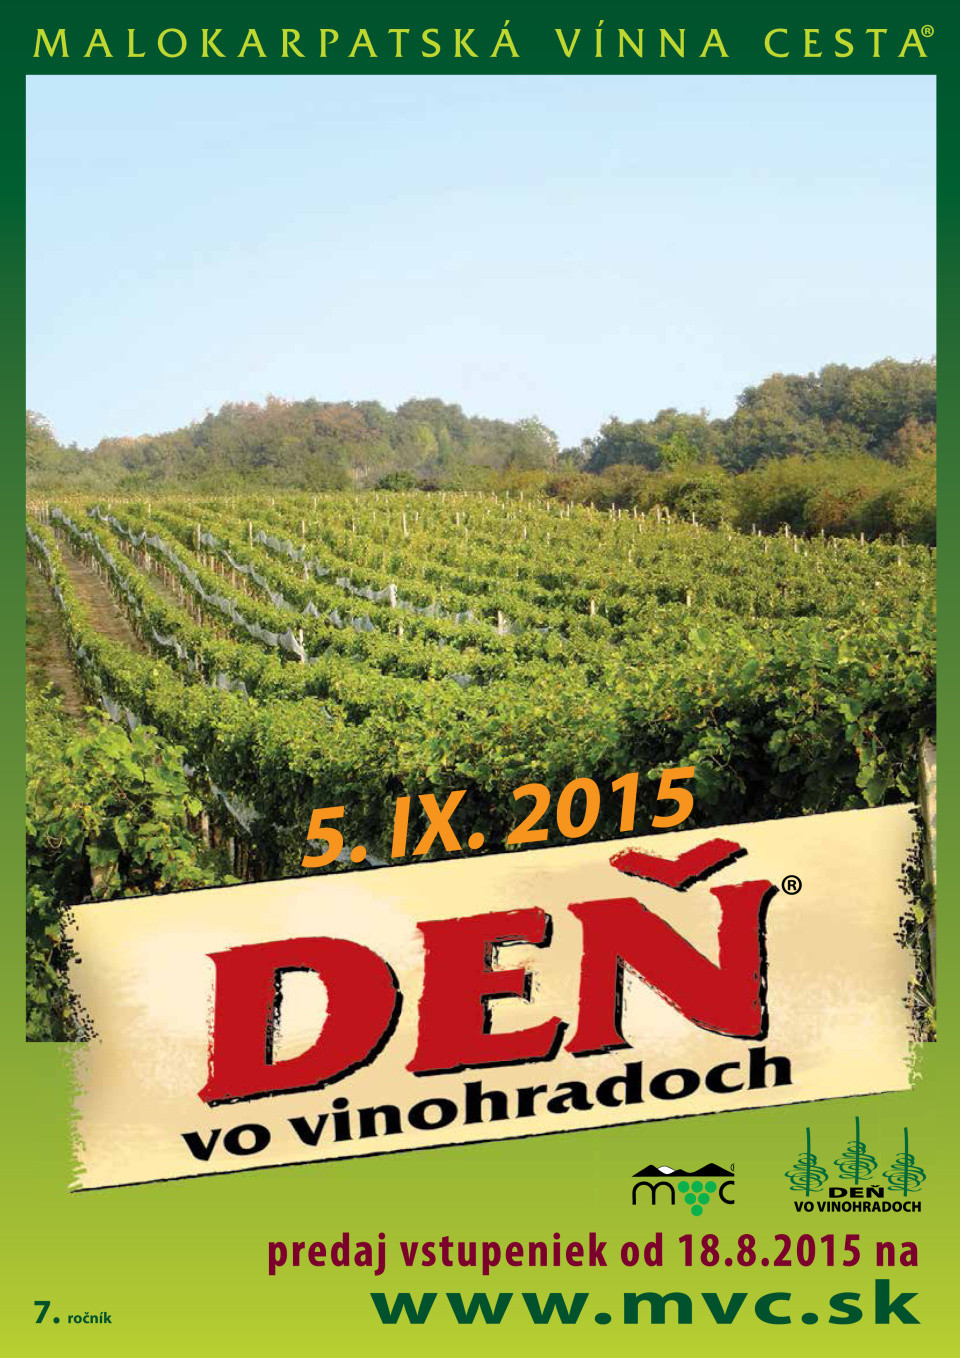 Deň vo vinohradoch 2015 (5.9.2015)